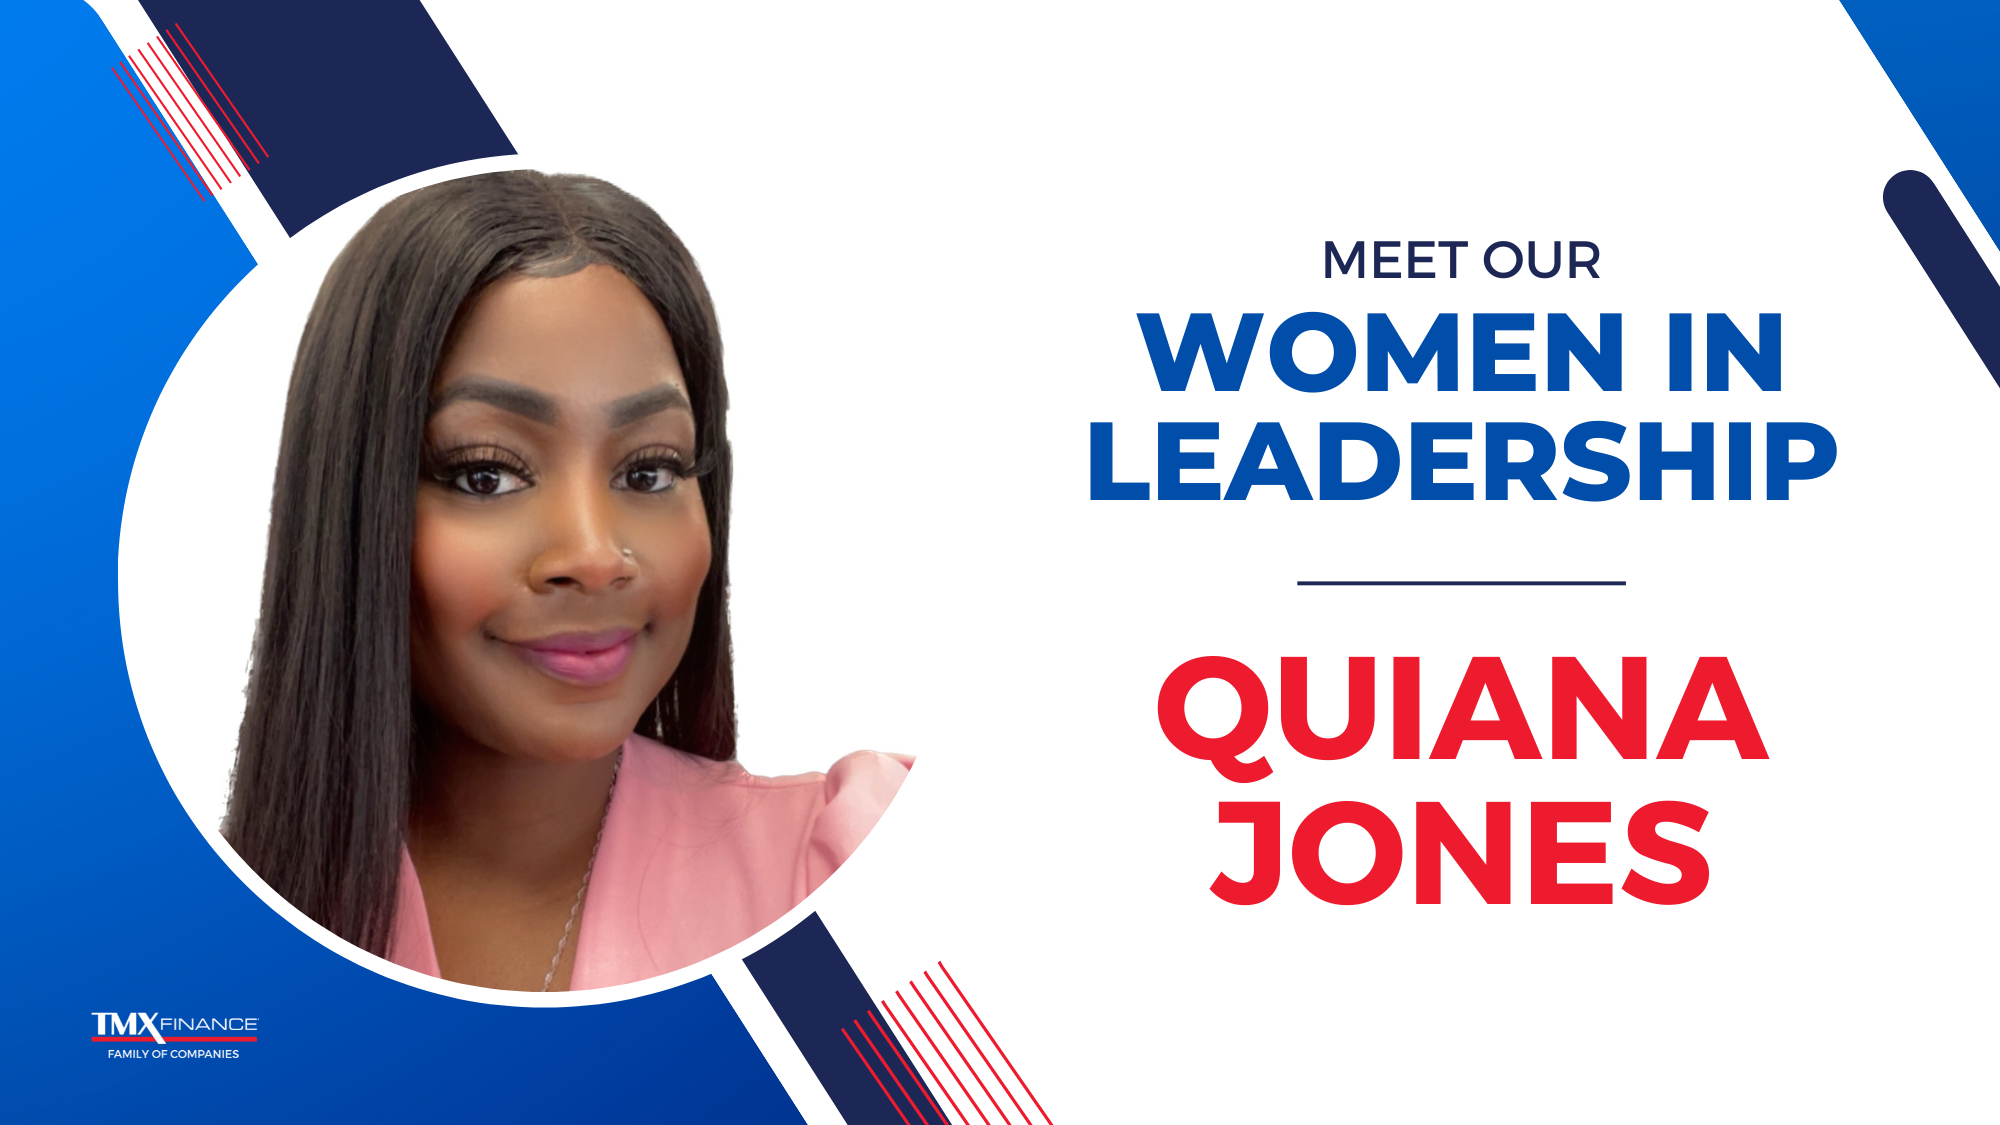 Meet Our Women Leaders: Quiana Jones